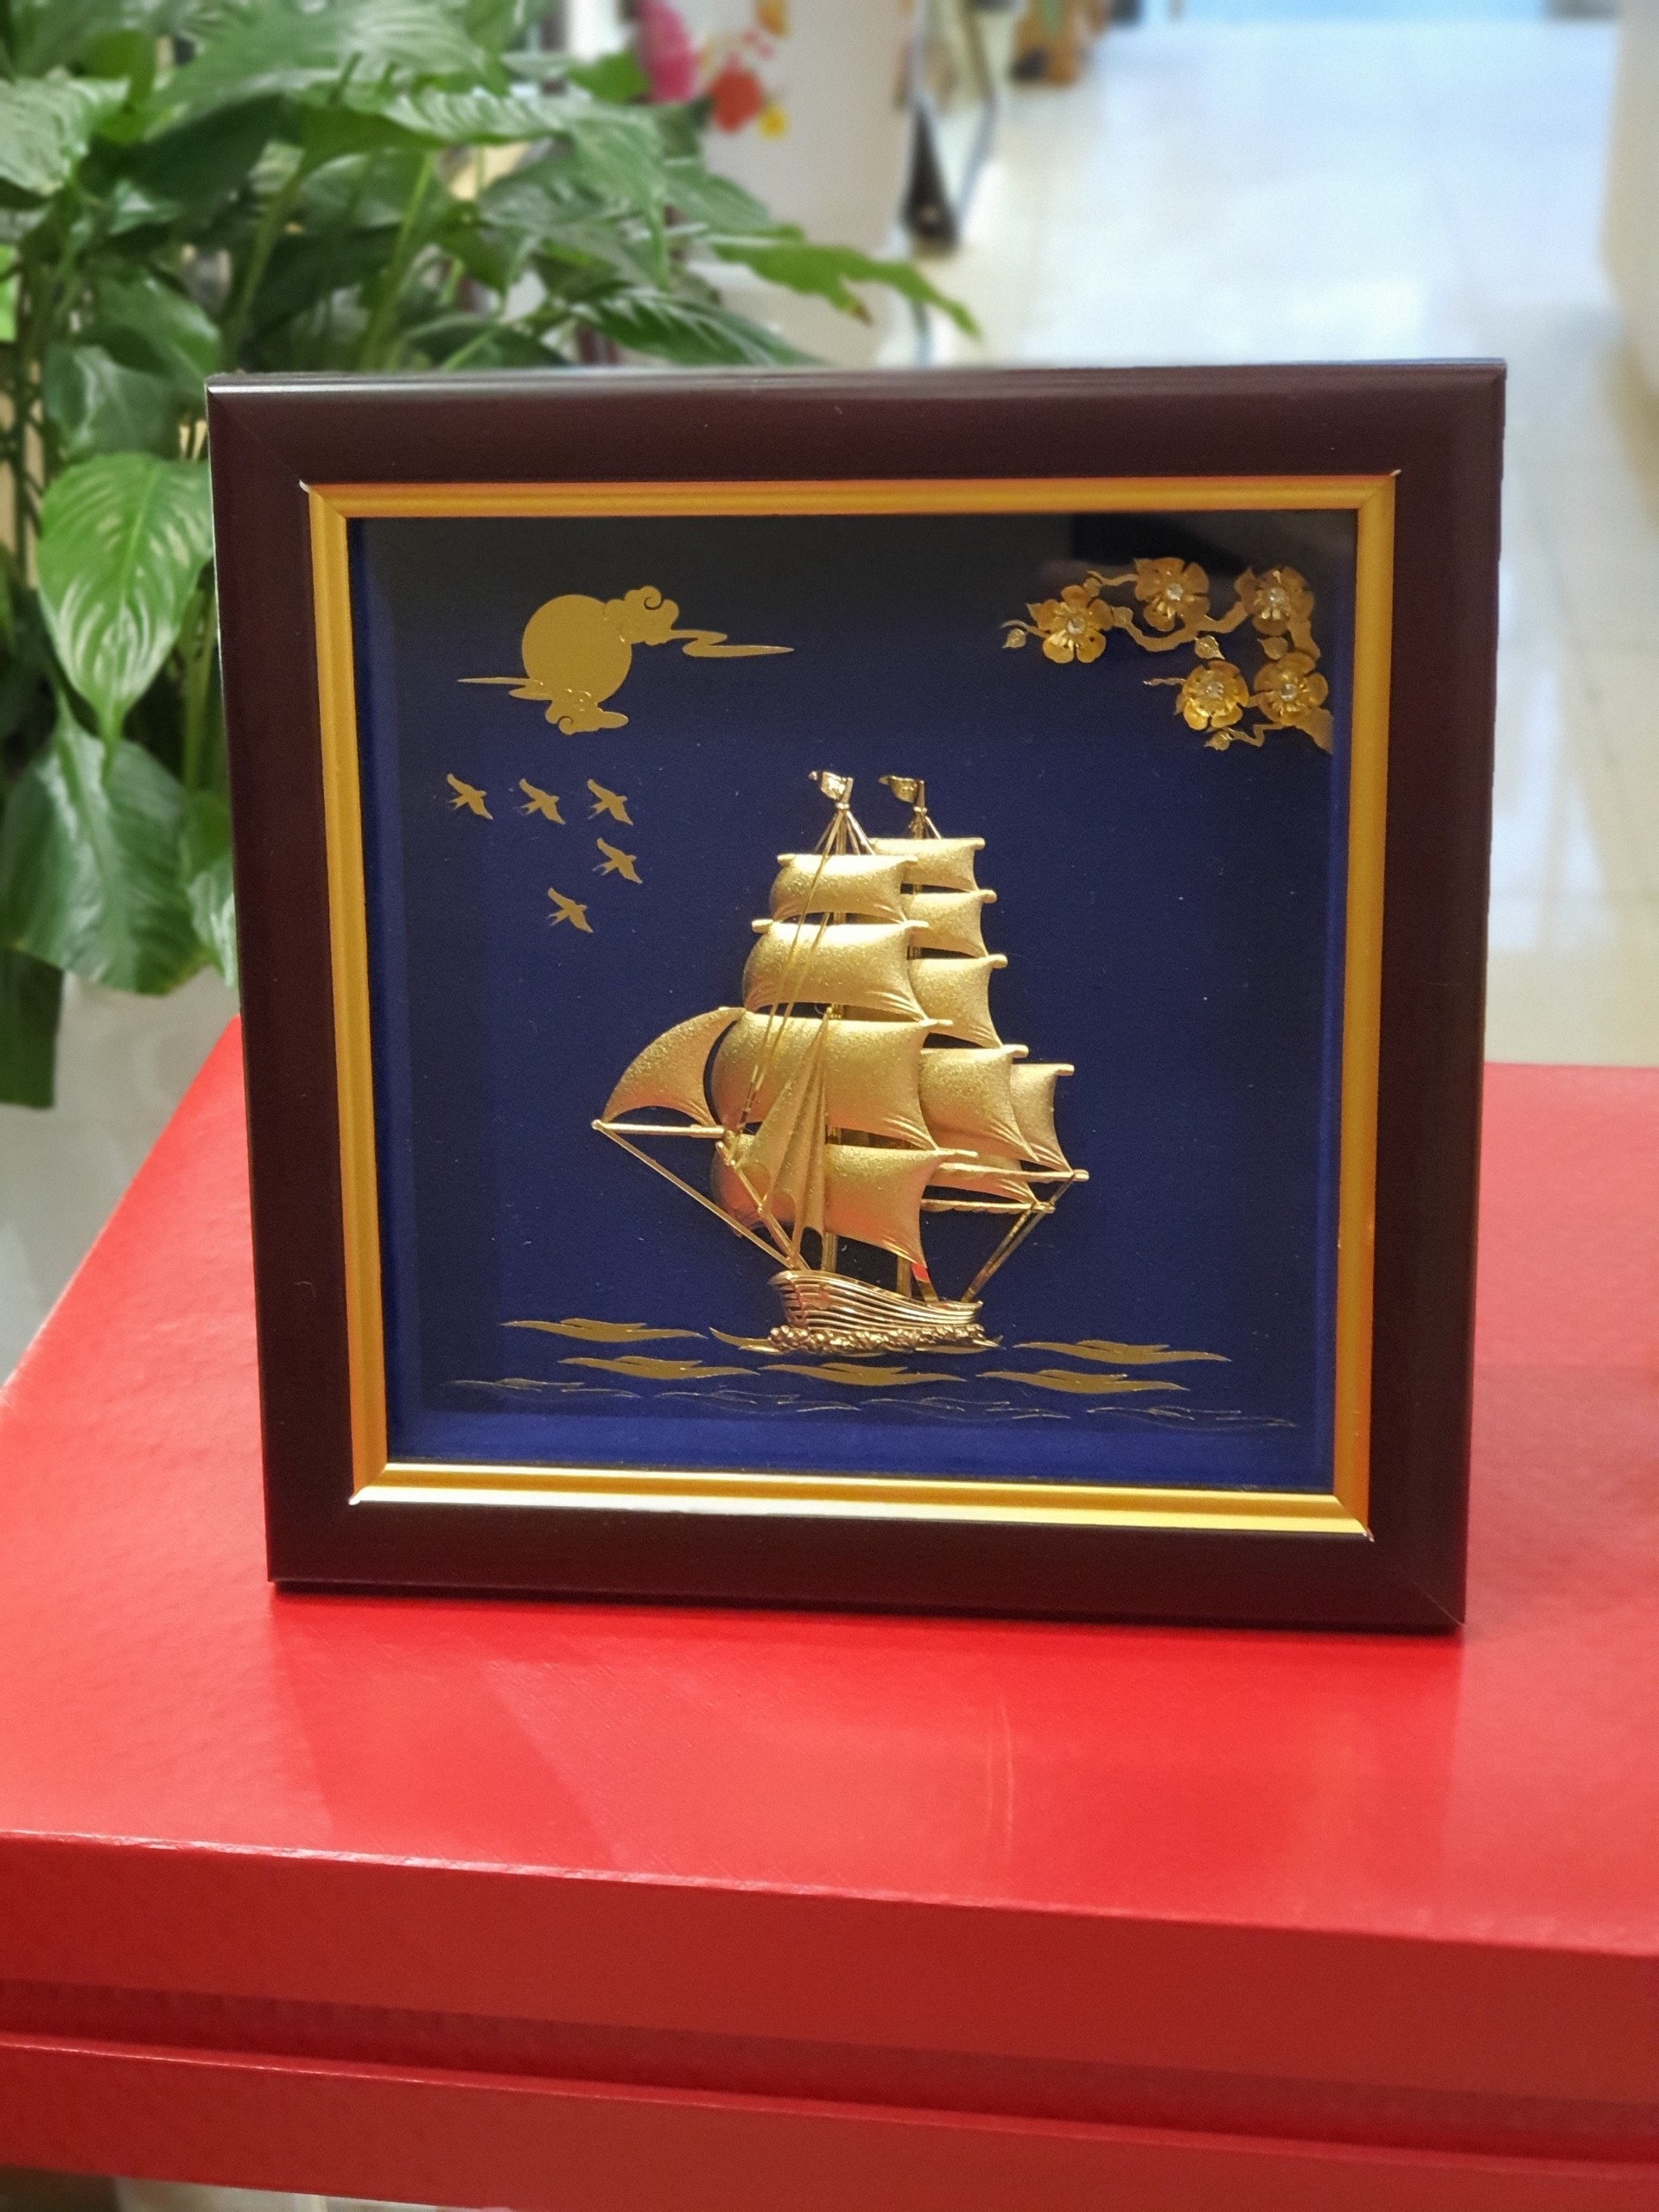 Tranh thuyền thuận buồm xuôi gió (20x20cm) MT Gold Art- Hàng chính hãng, trang trí nhà cửa, phòng làm việc, quà tặng sếp, đối tác, khách hàng, tân gia, khai trương 